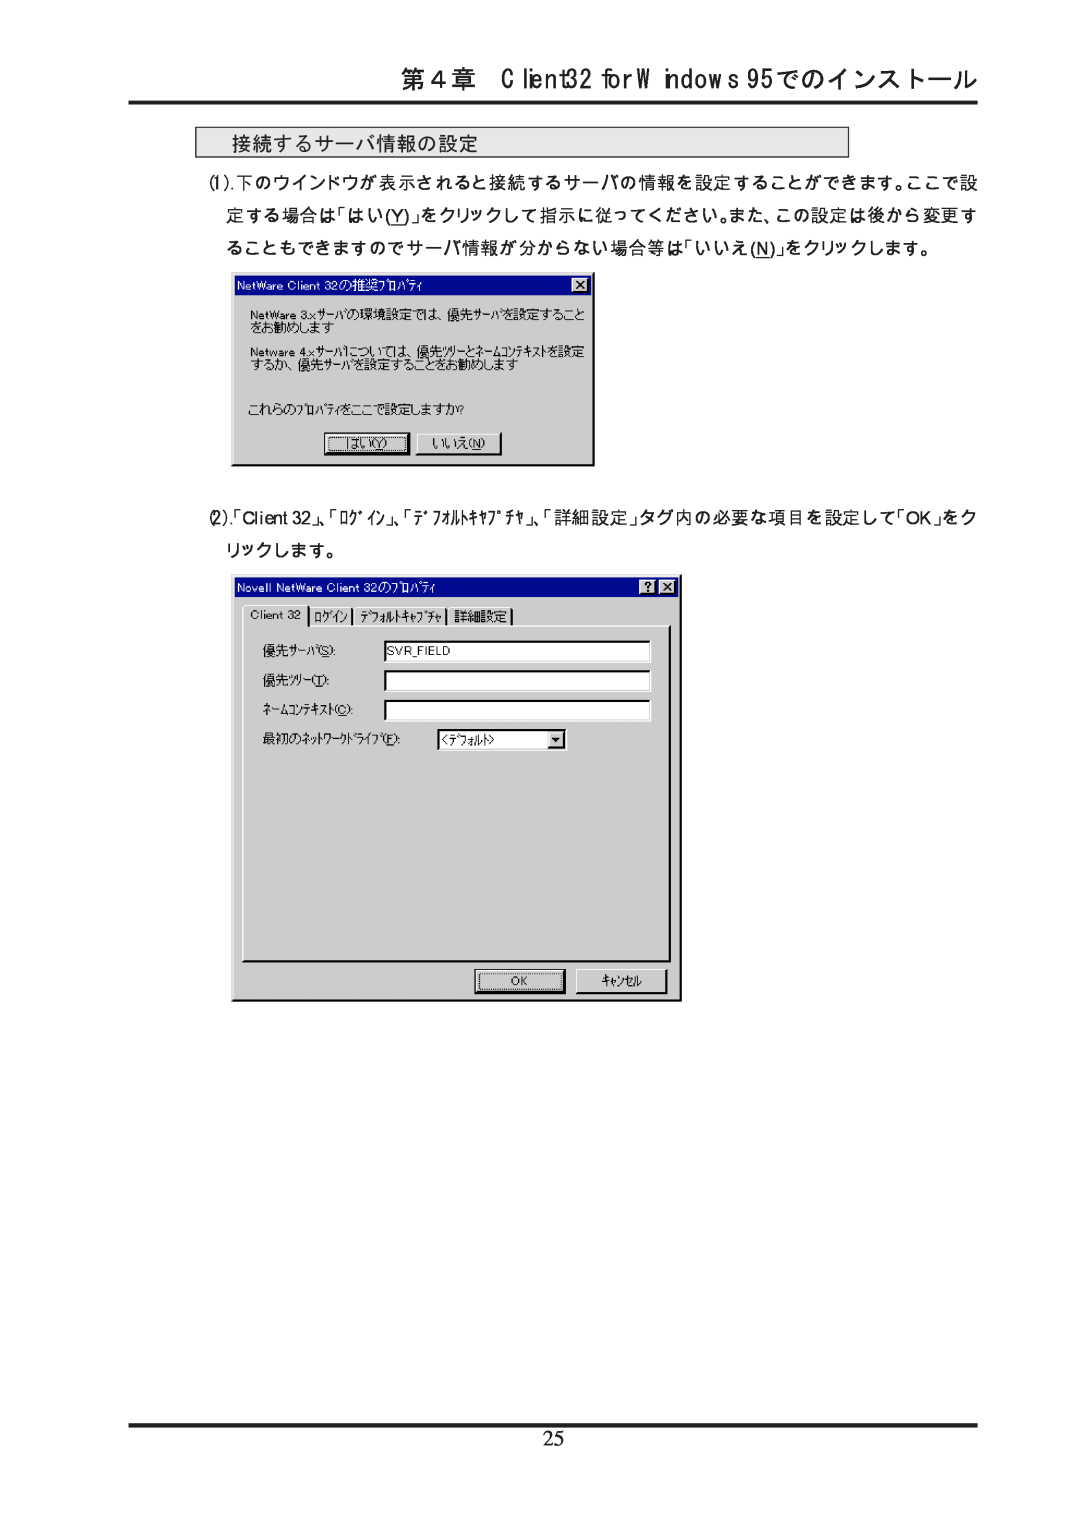 Ratoc Systems REX-R280 第４章 Client32 for Windows 95でのインストール, 接続するサーバ情報の設定, 1.下のウインドウが表示されると接続するサーバの情報を設定することができます。ここで設 